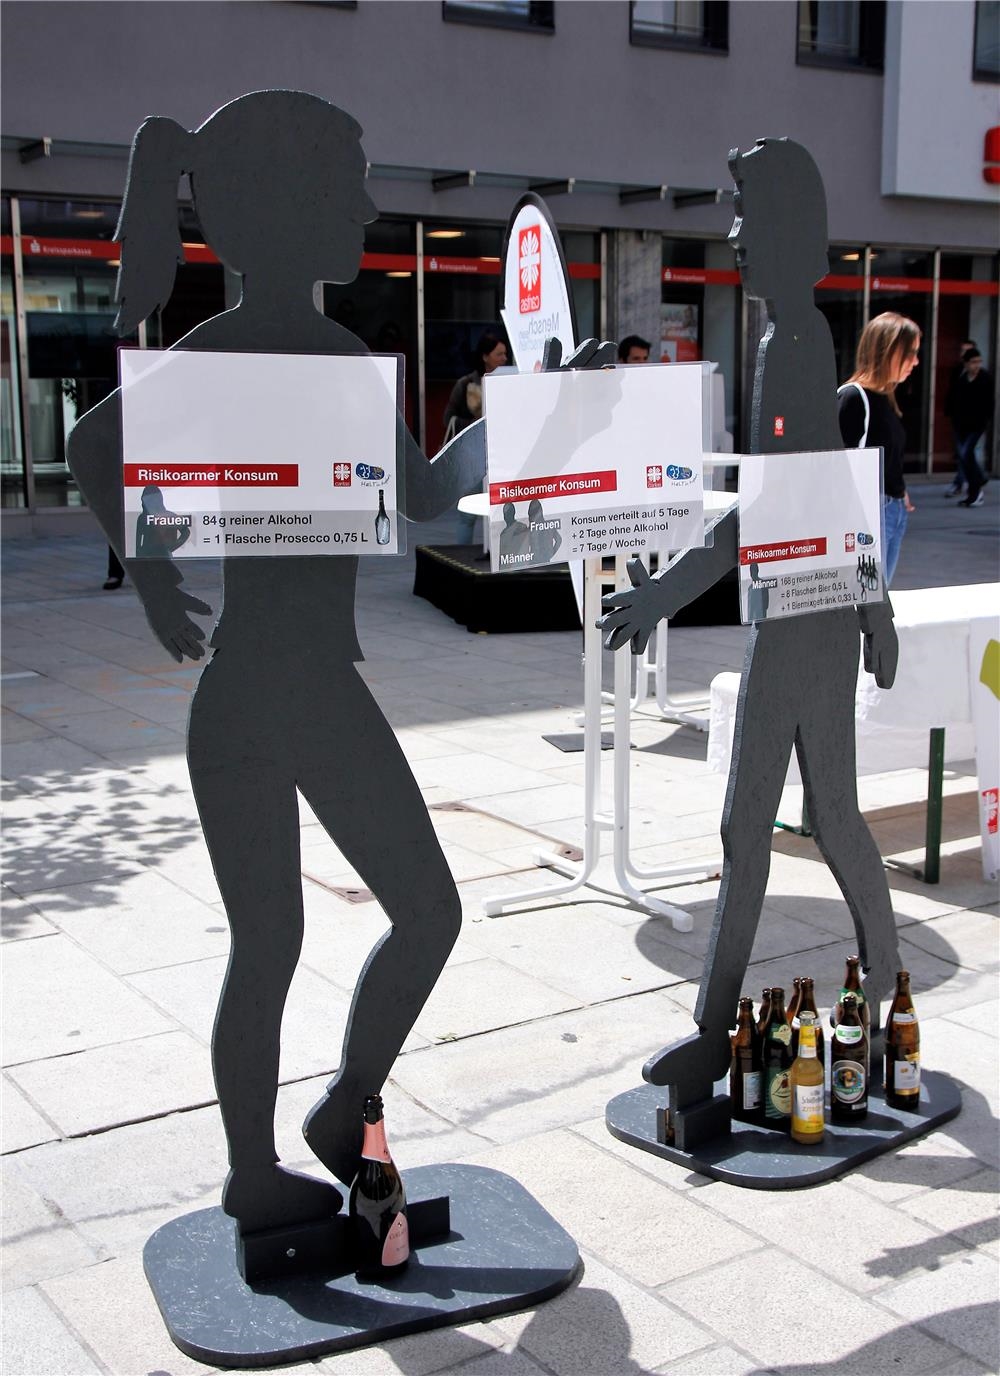 Holzfiguren klärten mit Info-Tafeln über die Unterschiede von Frauen zu Männern beim Alkoholkonsum auf.  (Bernhard Gattner)